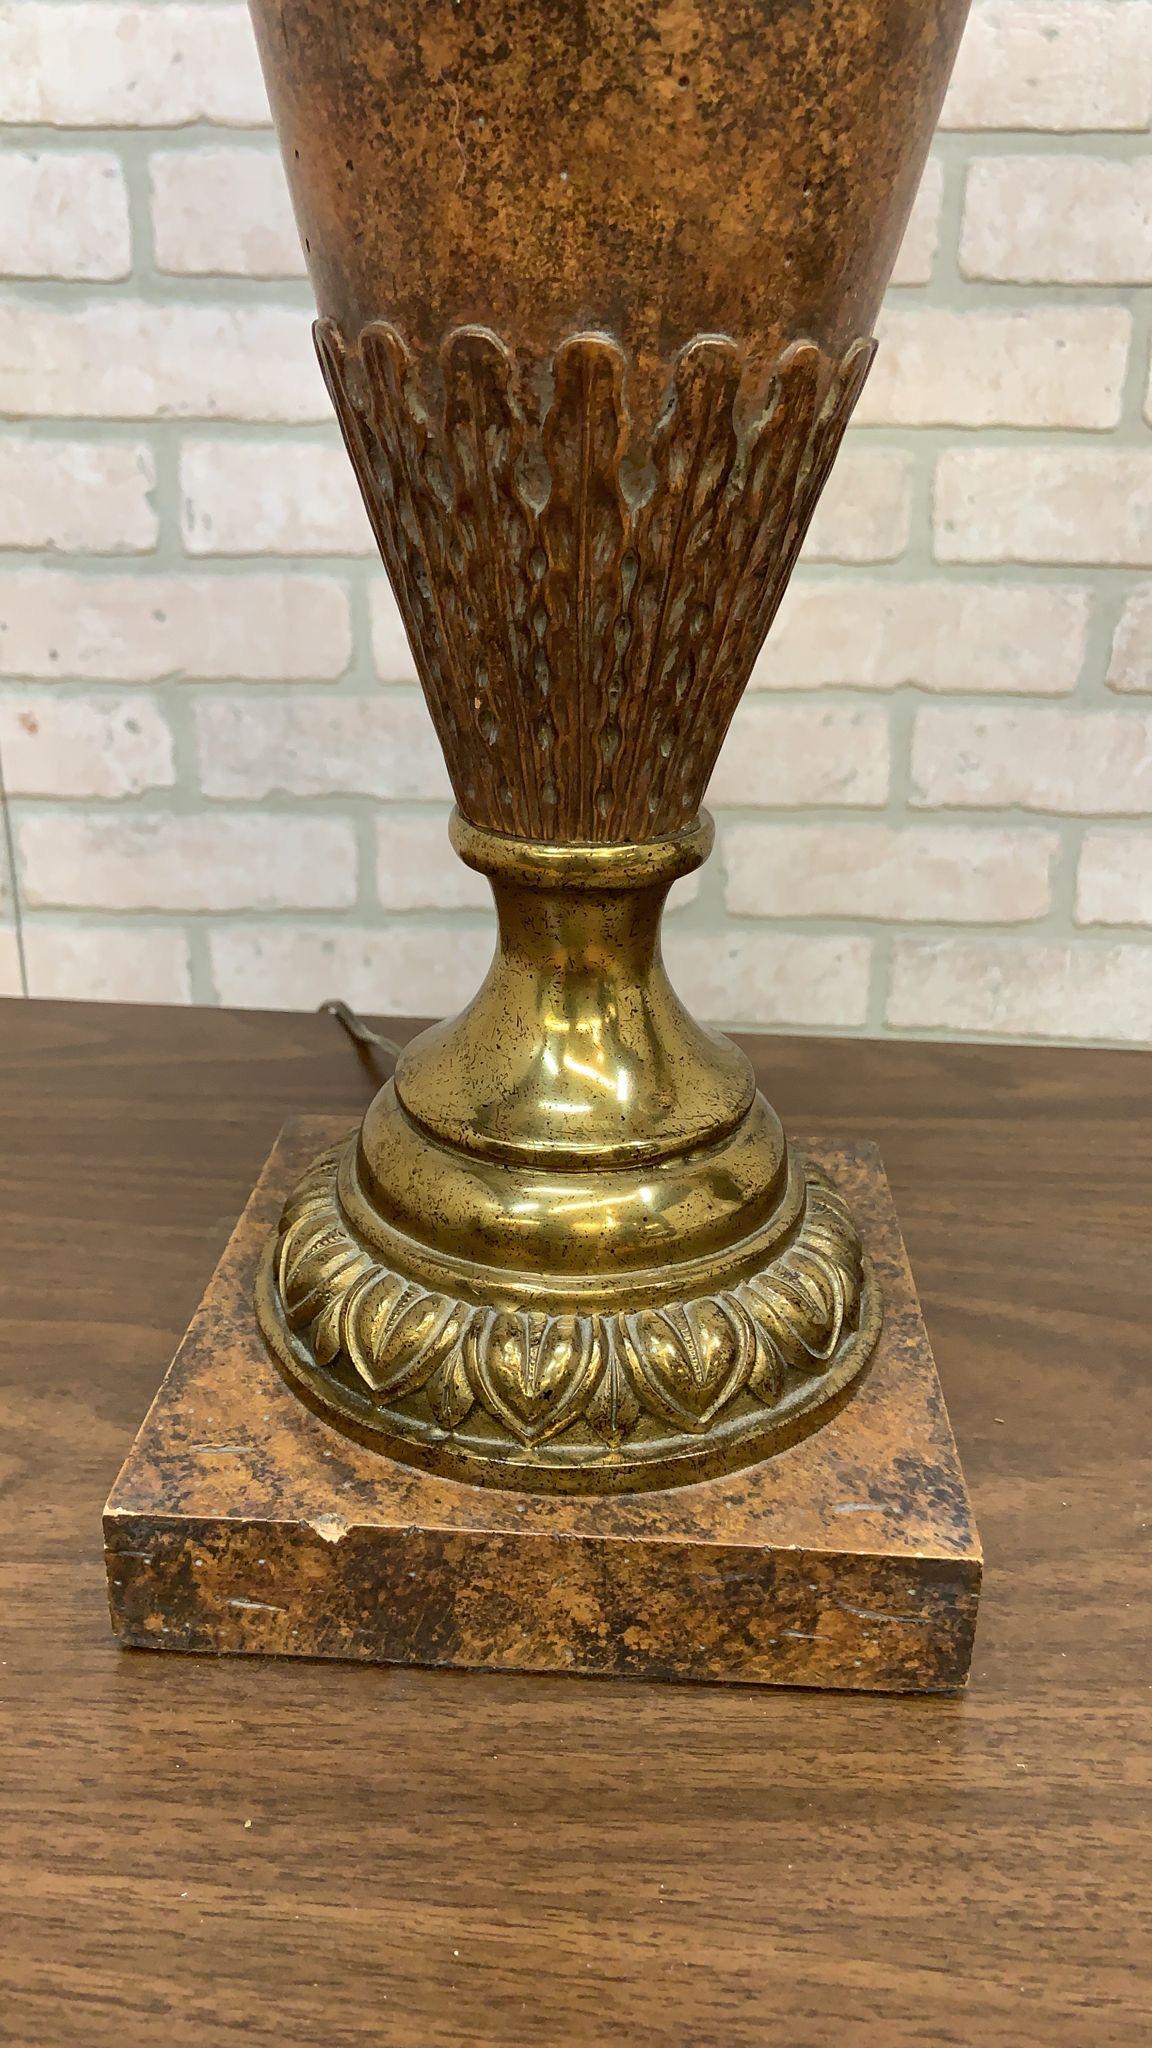 Paire de lampes de bureau vintage Maitland Smith en bronze de style néoclassique français

Superbe paire de lampes de table en bronze de style néoclassique français, fabriquées par Maitland-Smith. Chaque lampe est fabriquée avec des tiges effilées